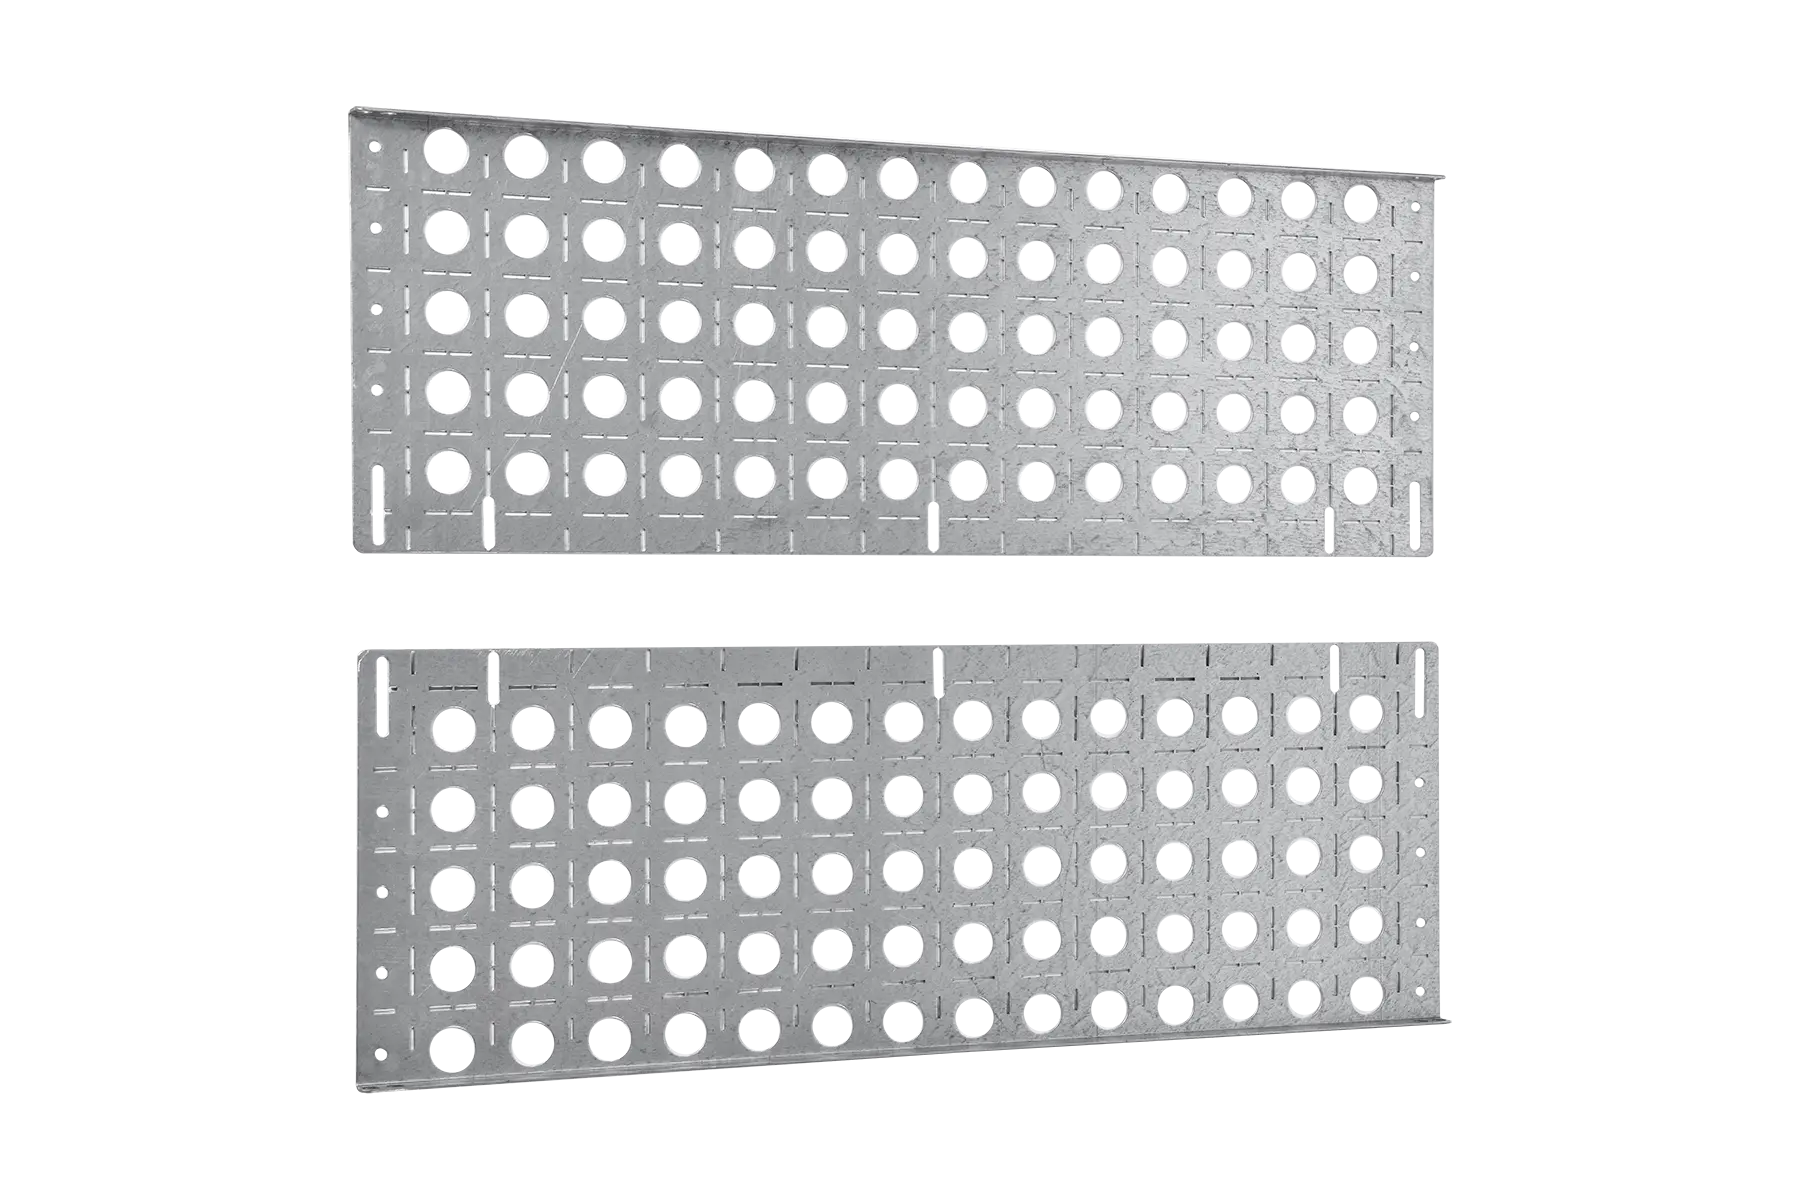 комплект боковых монтажных панелей 19" (в800 × г300) с уголками для крепления оборудования, EU-800.300